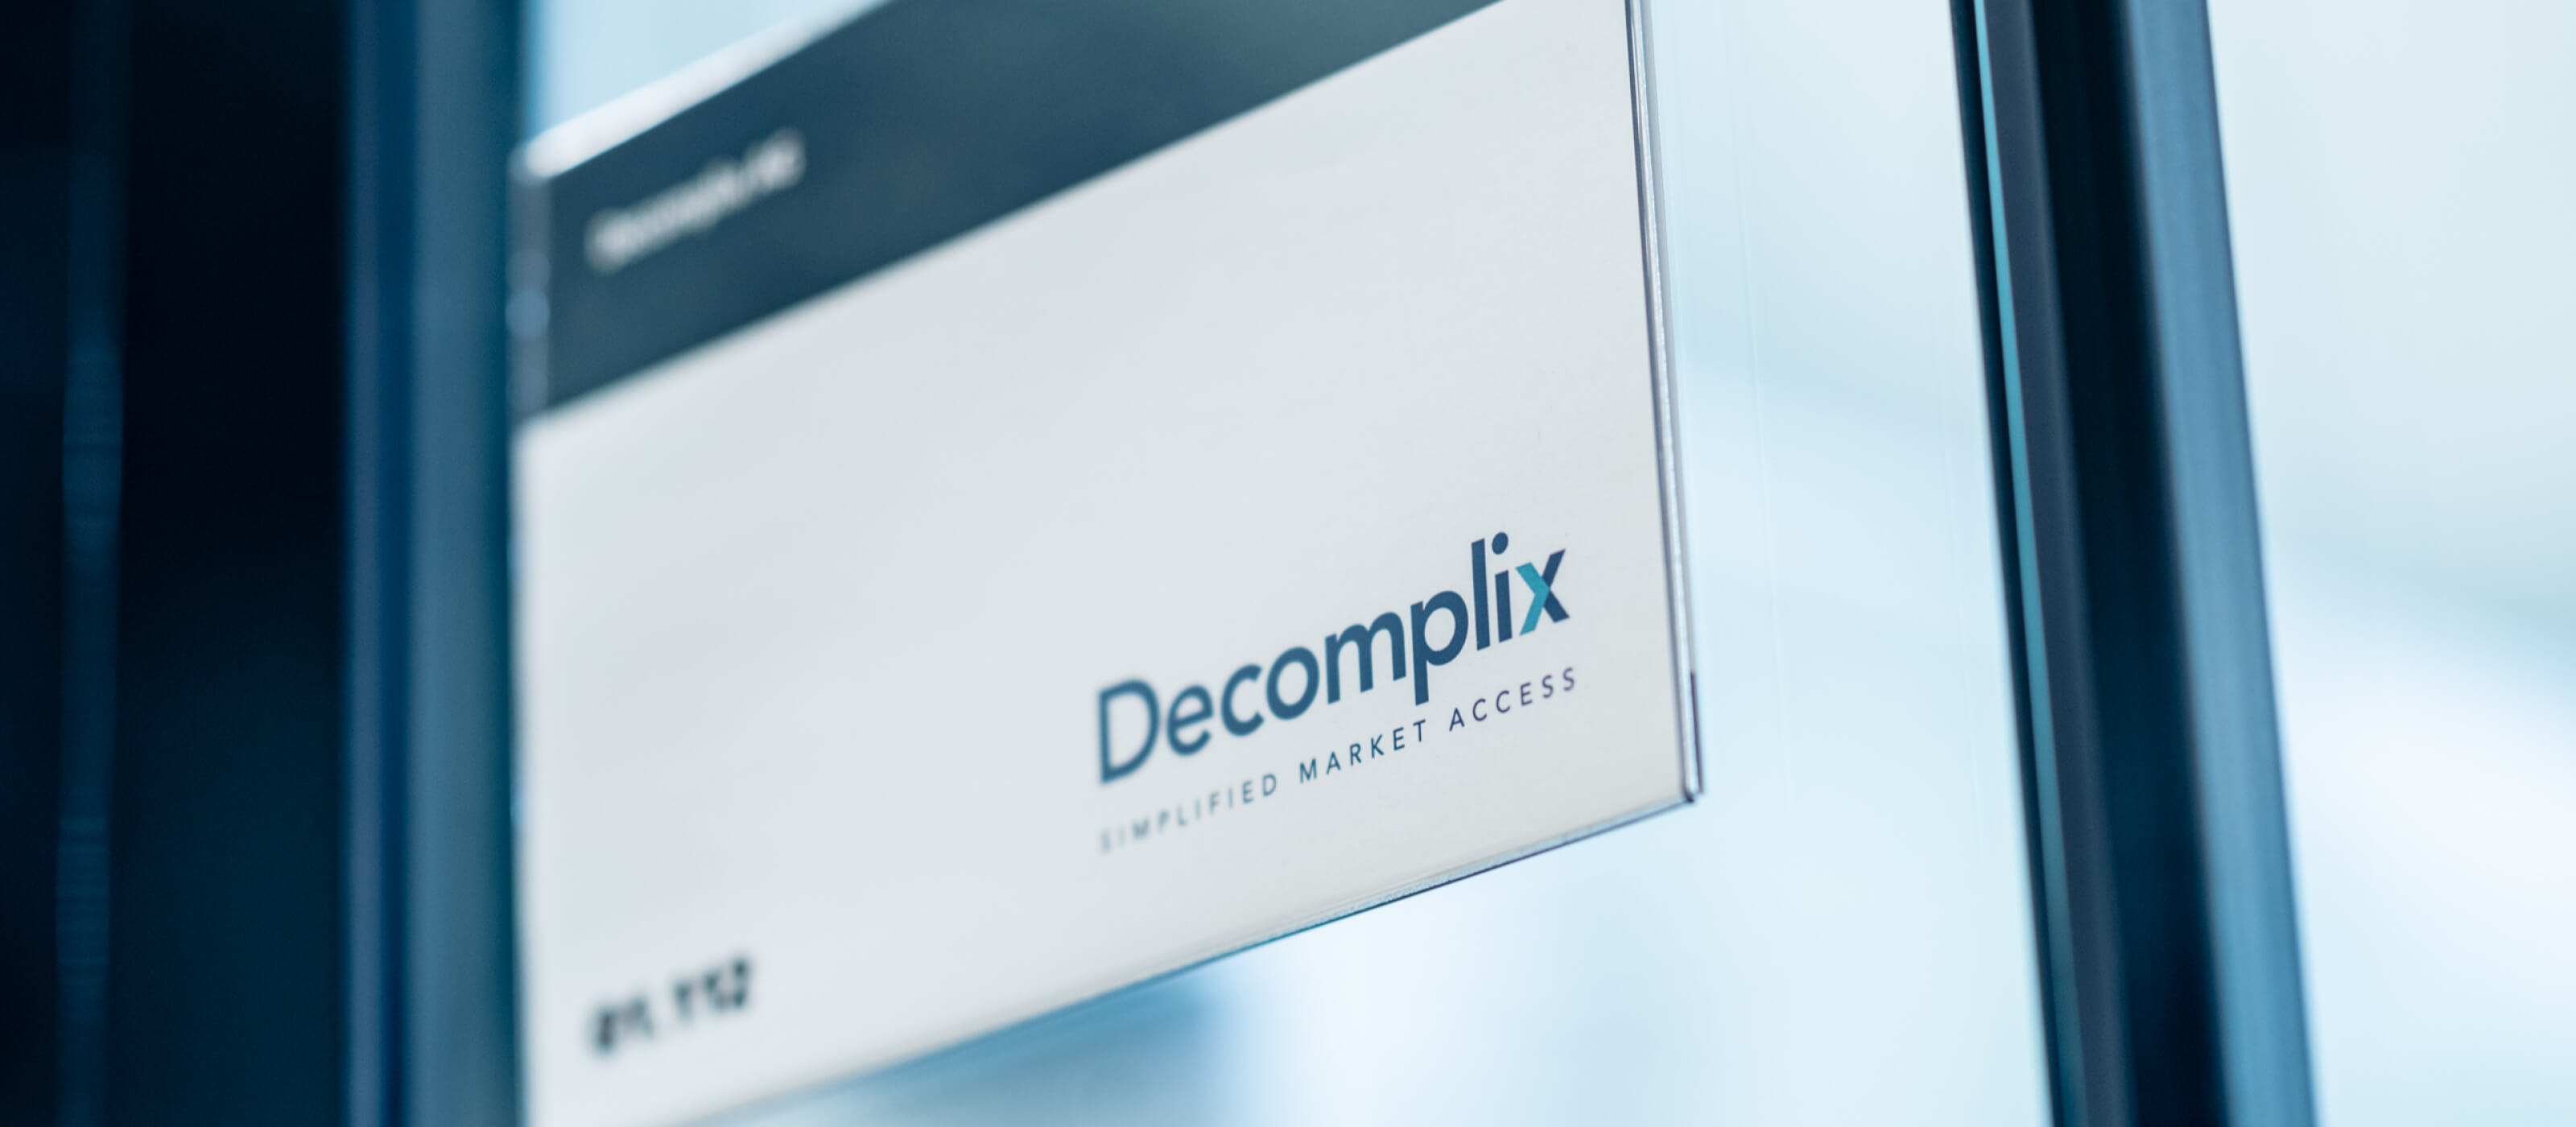 Decomplix company sign